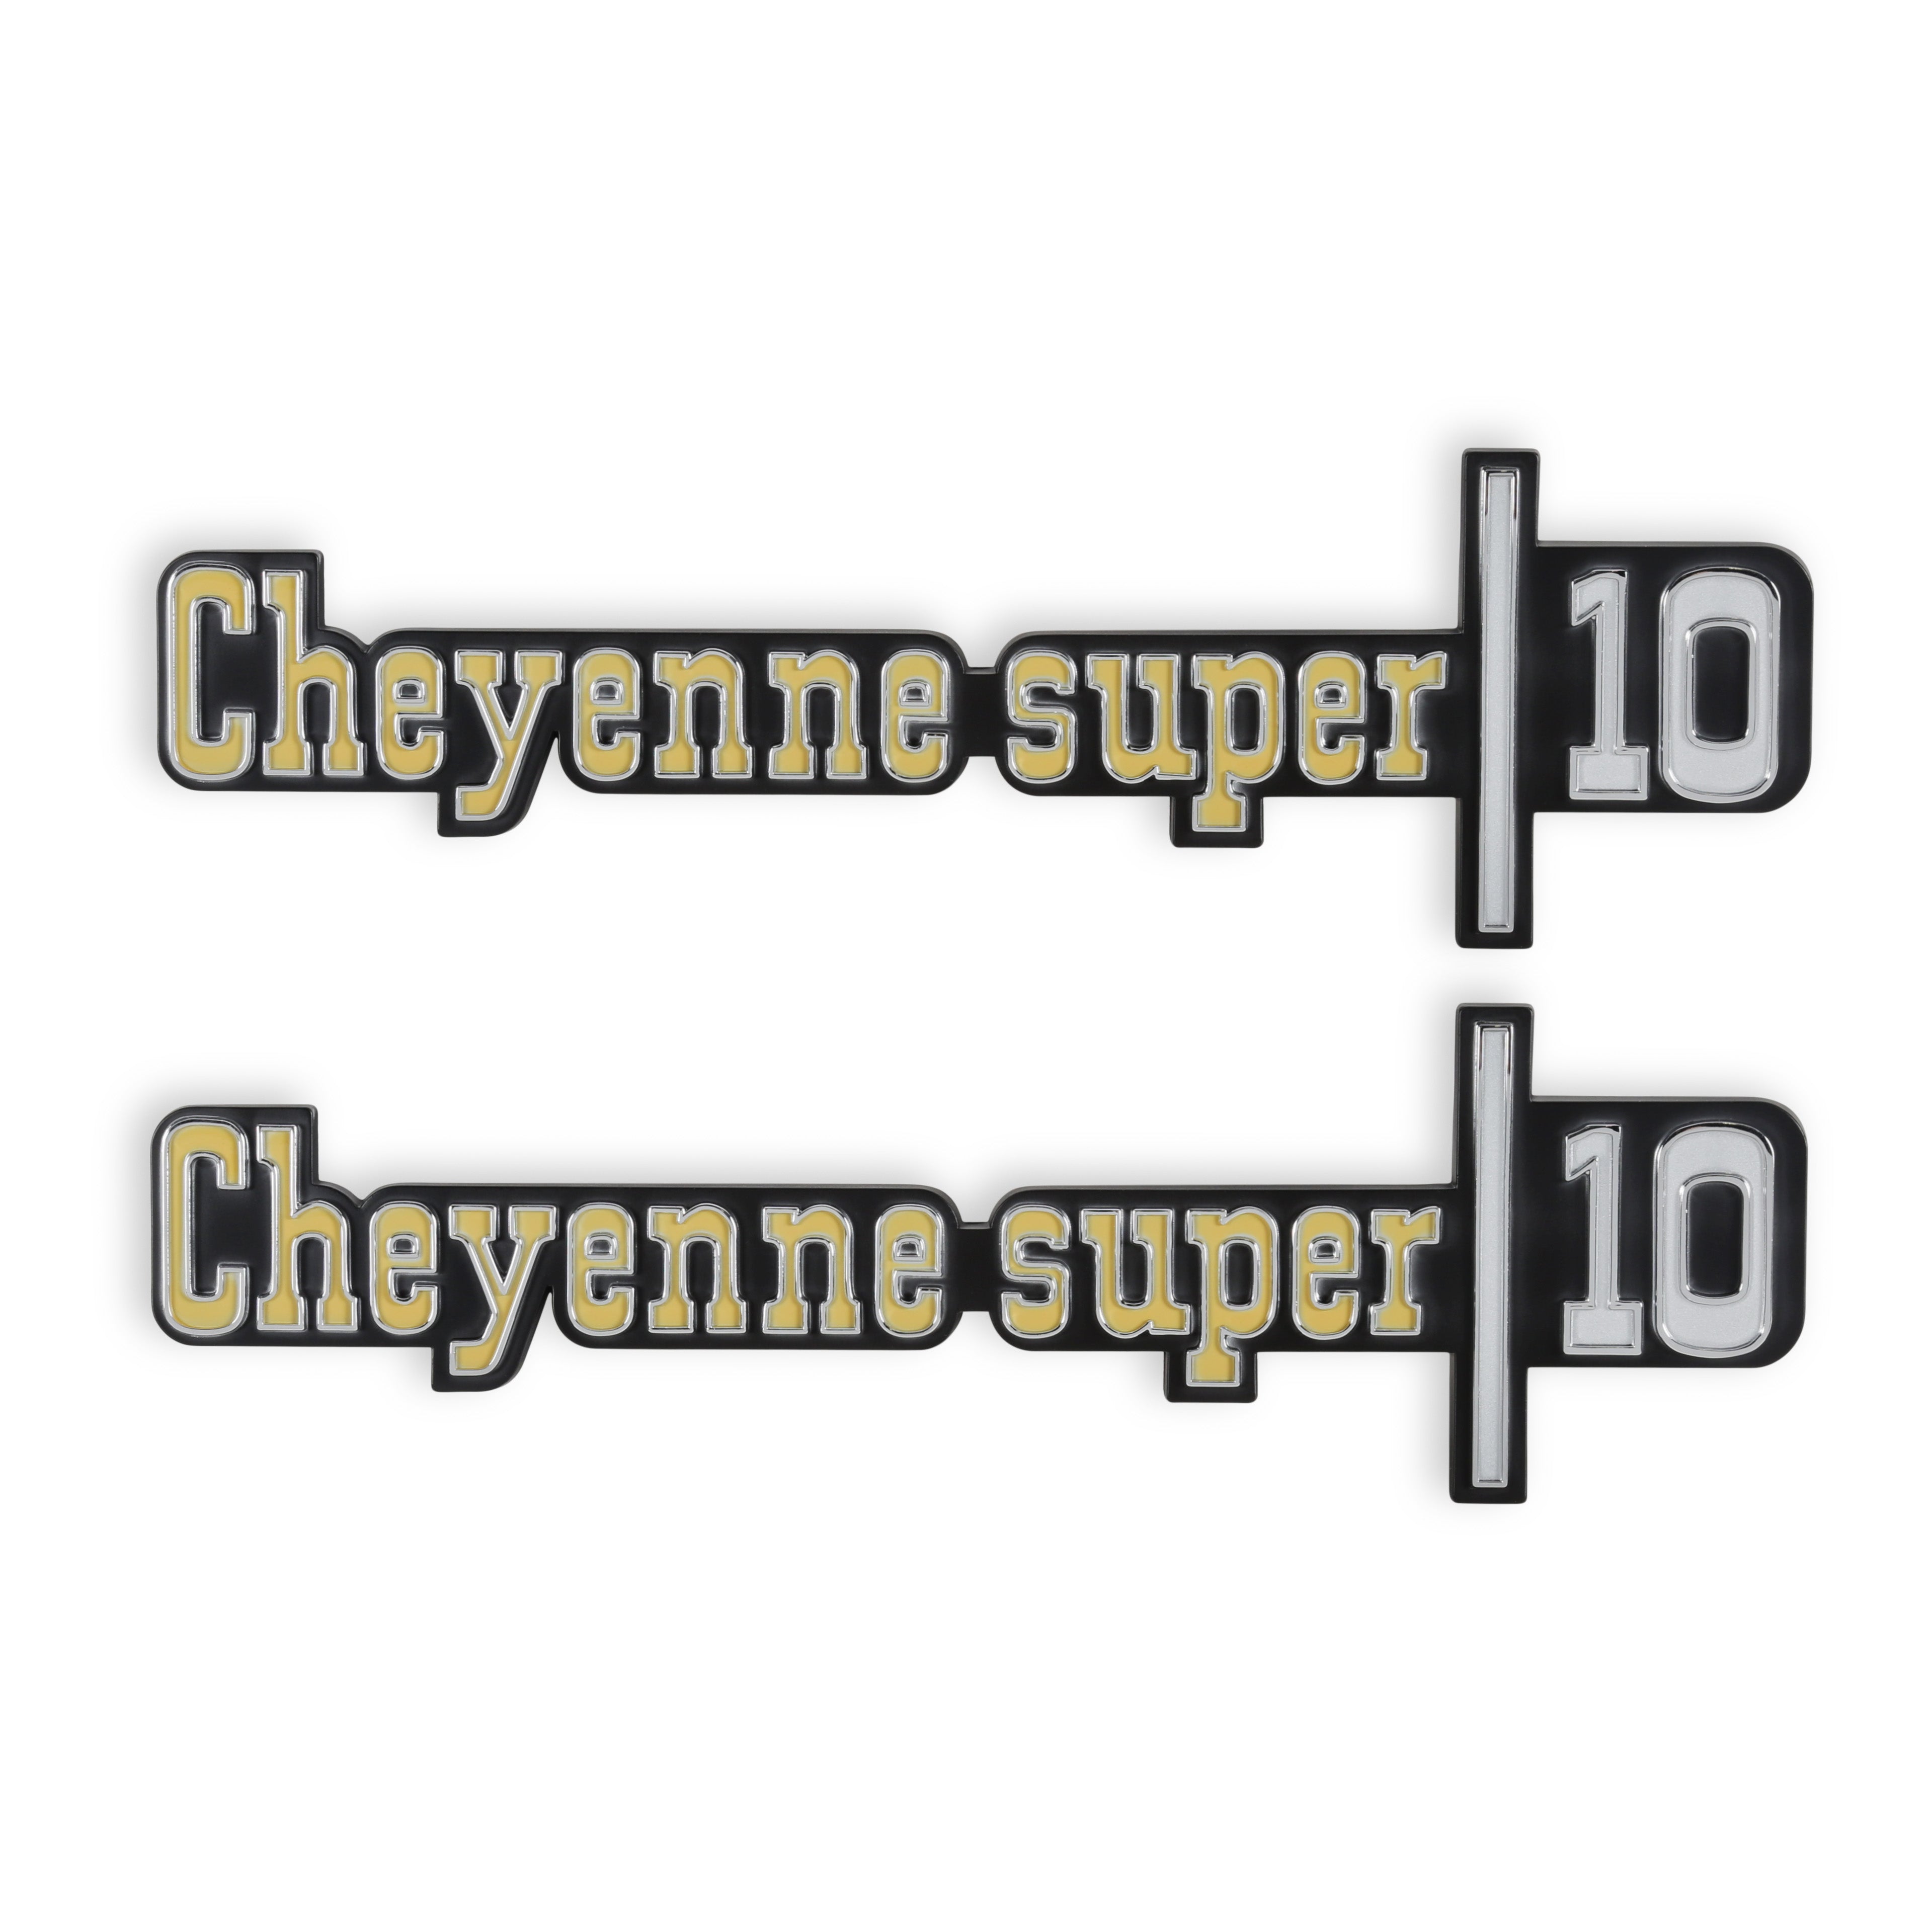 BROTHERS C/K Fender Badge Pair - Cheyenne Super 10 pn 04-541